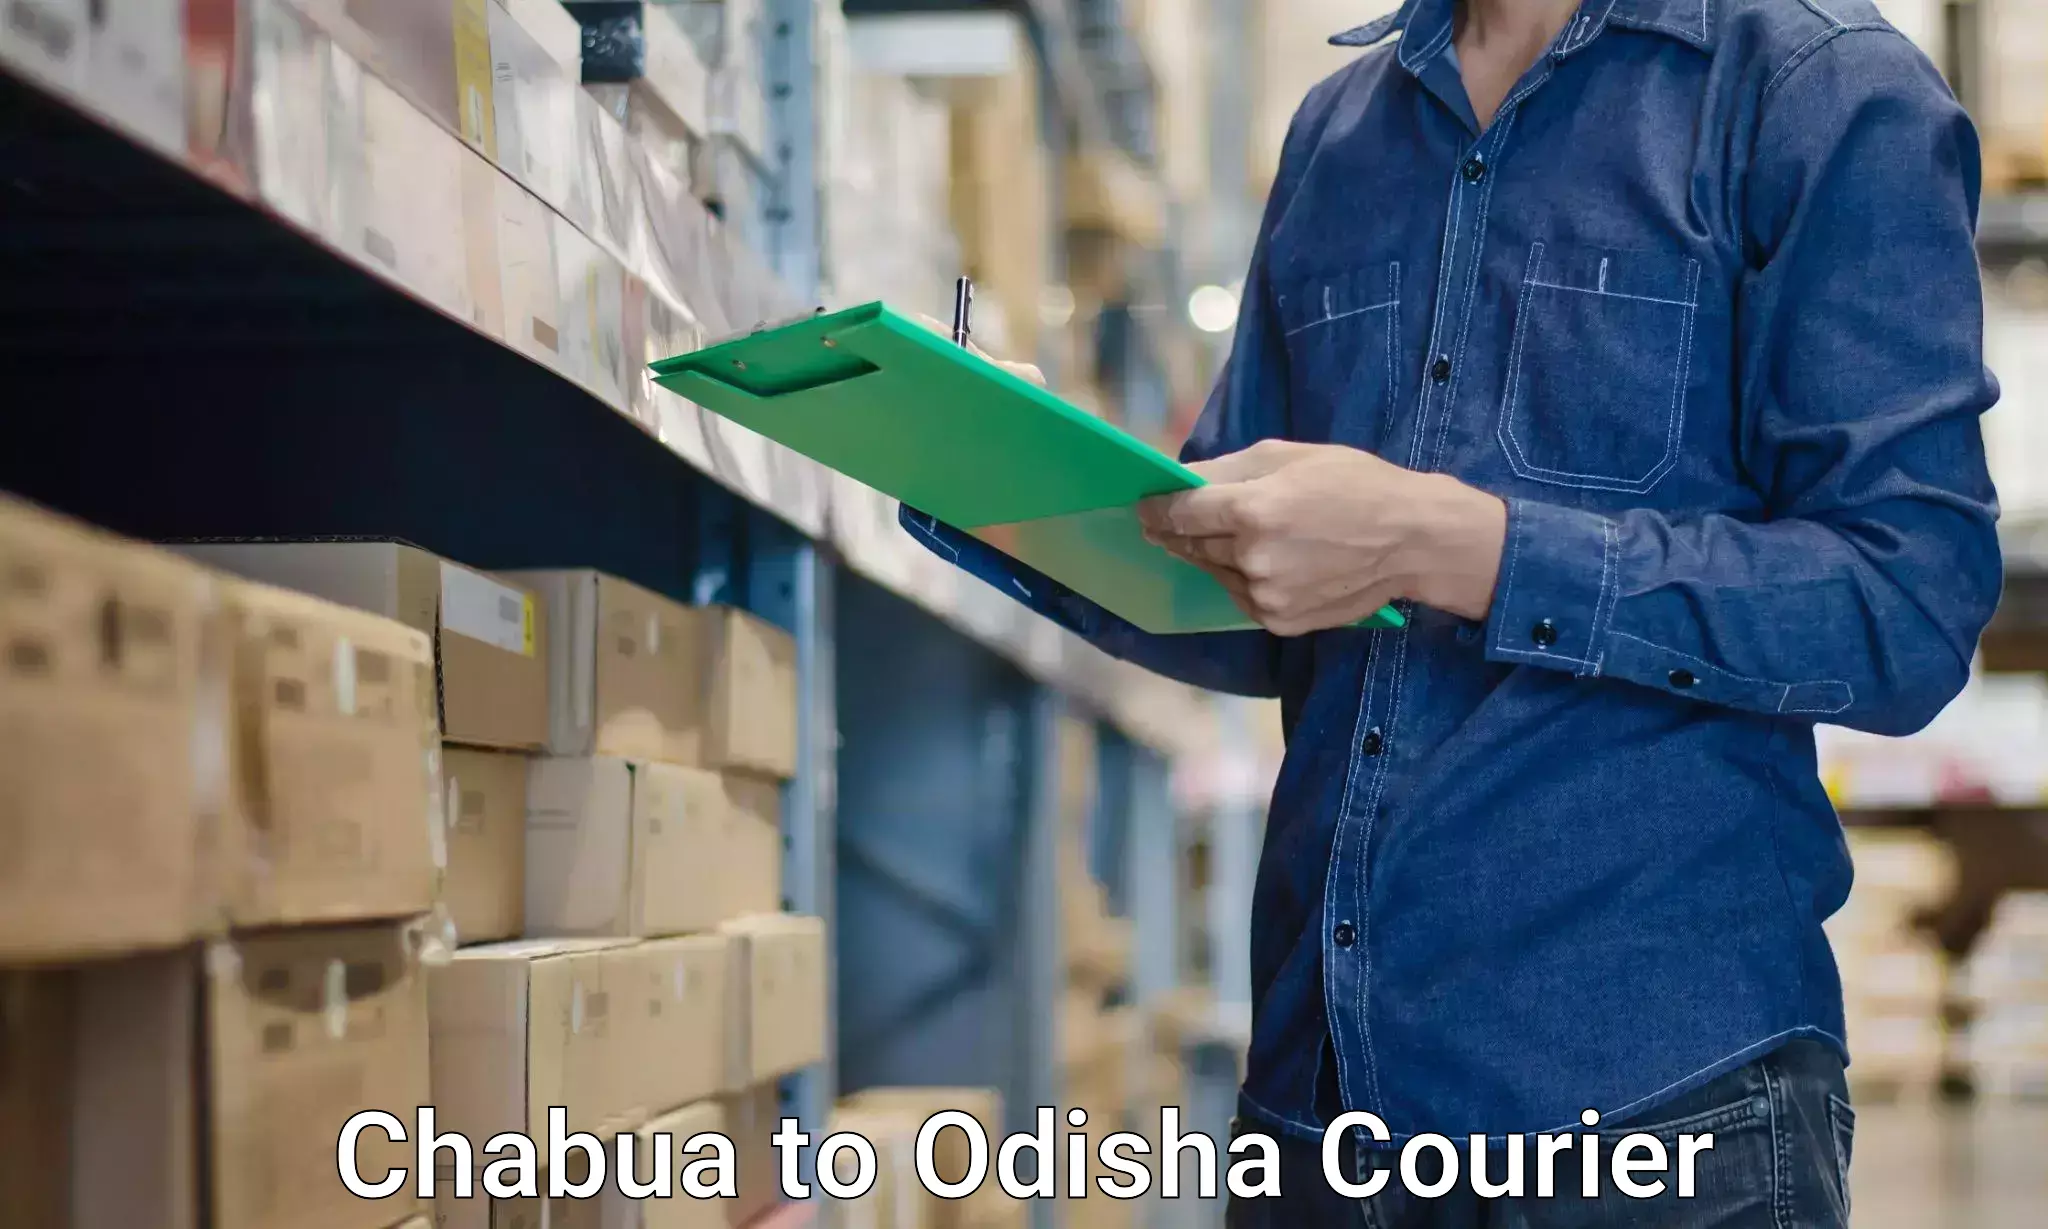 Home shifting experts Chabua to Odisha